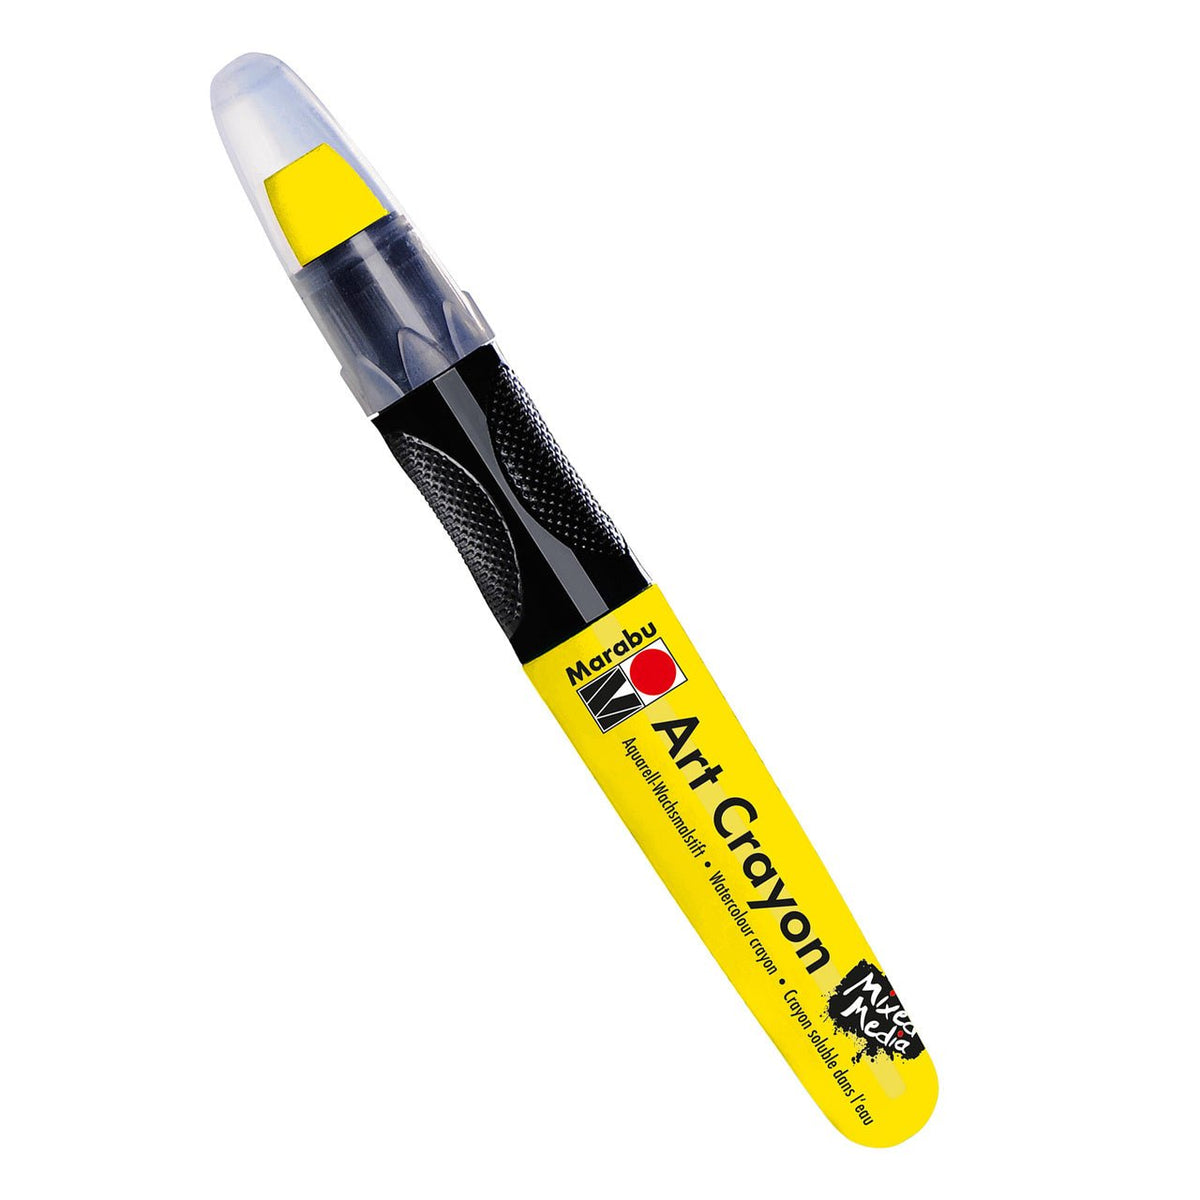 Marabu Water Soluble Art Crayon - Sunshine Yellow - merriartist.com